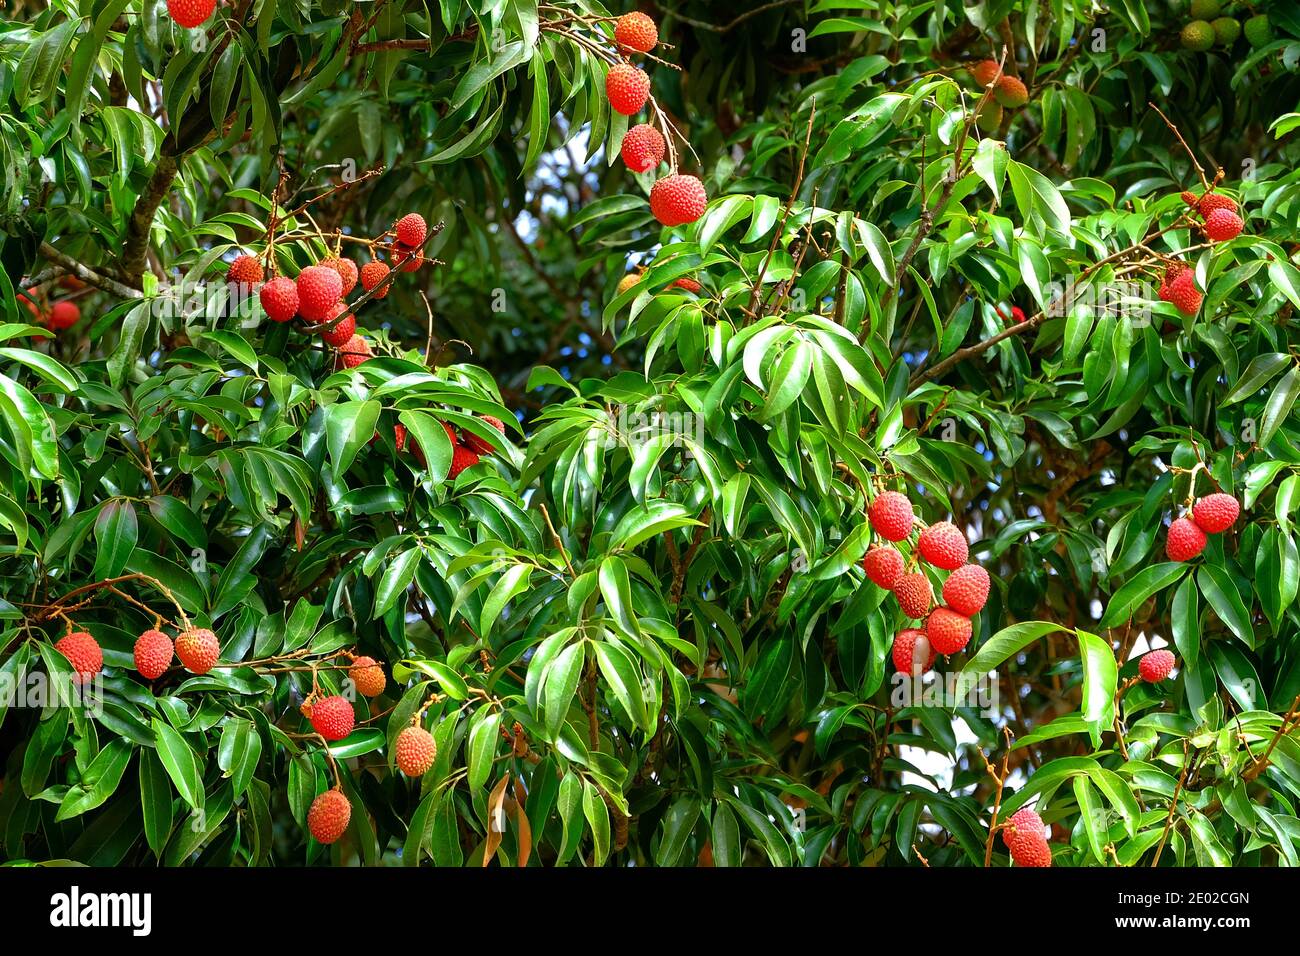 Lychee (lechee, leechee, litchee) Baum mit reifen roten Früchten bereit, gepflückt werden. Stockfoto